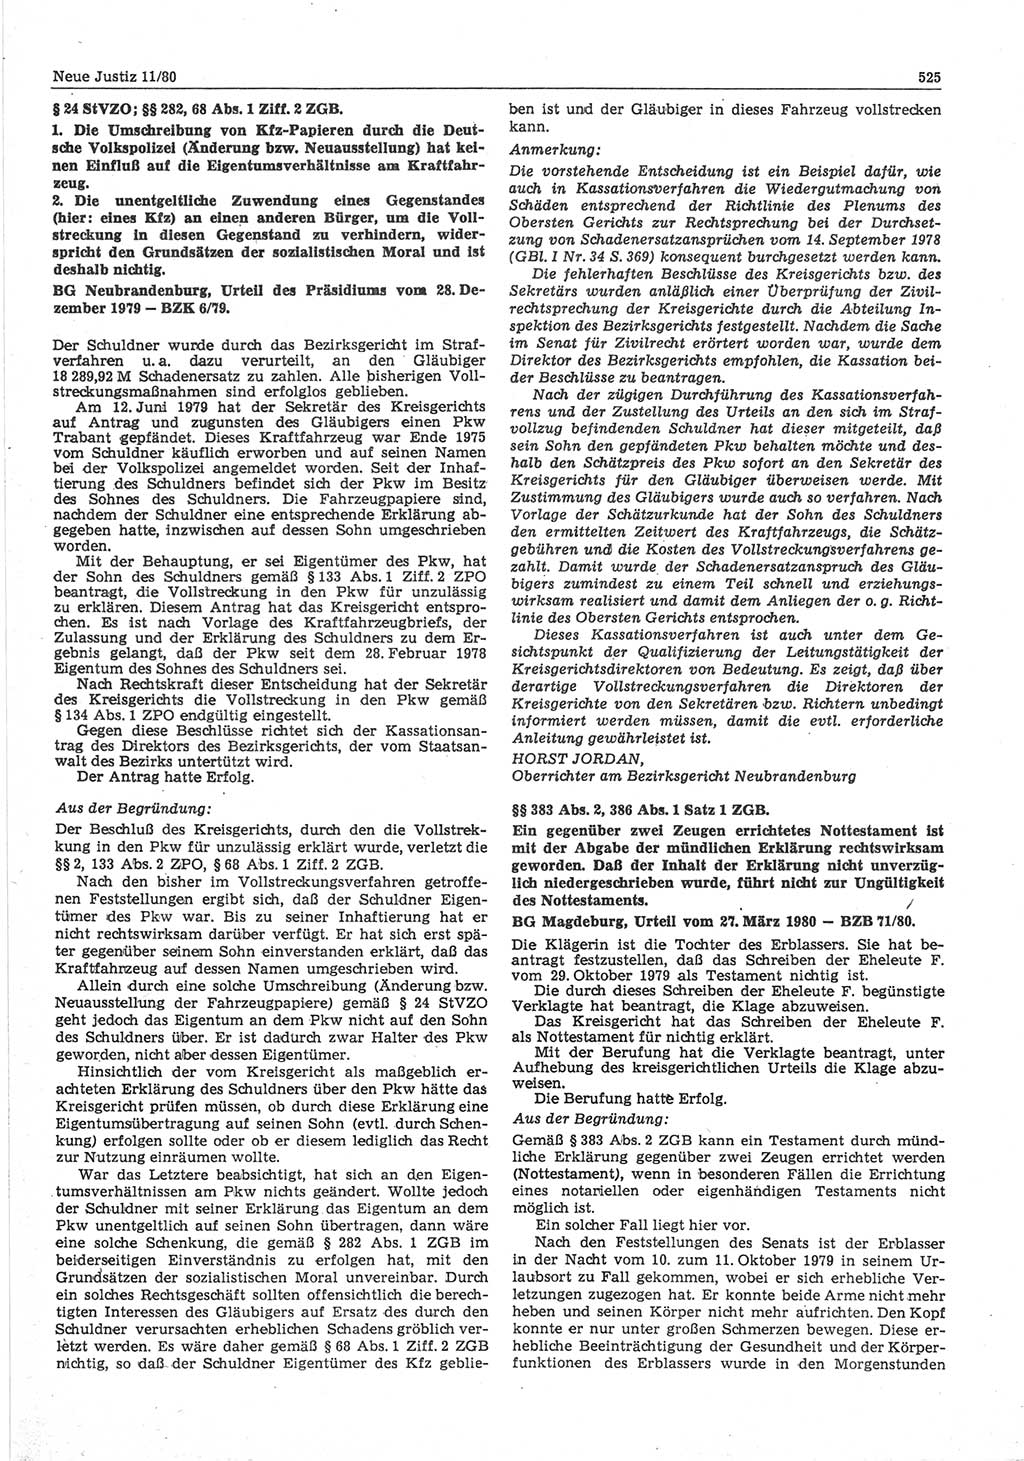 Neue Justiz (NJ), Zeitschrift für sozialistisches Recht und Gesetzlichkeit [Deutsche Demokratische Republik (DDR)], 34. Jahrgang 1980, Seite 525 (NJ DDR 1980, S. 525)